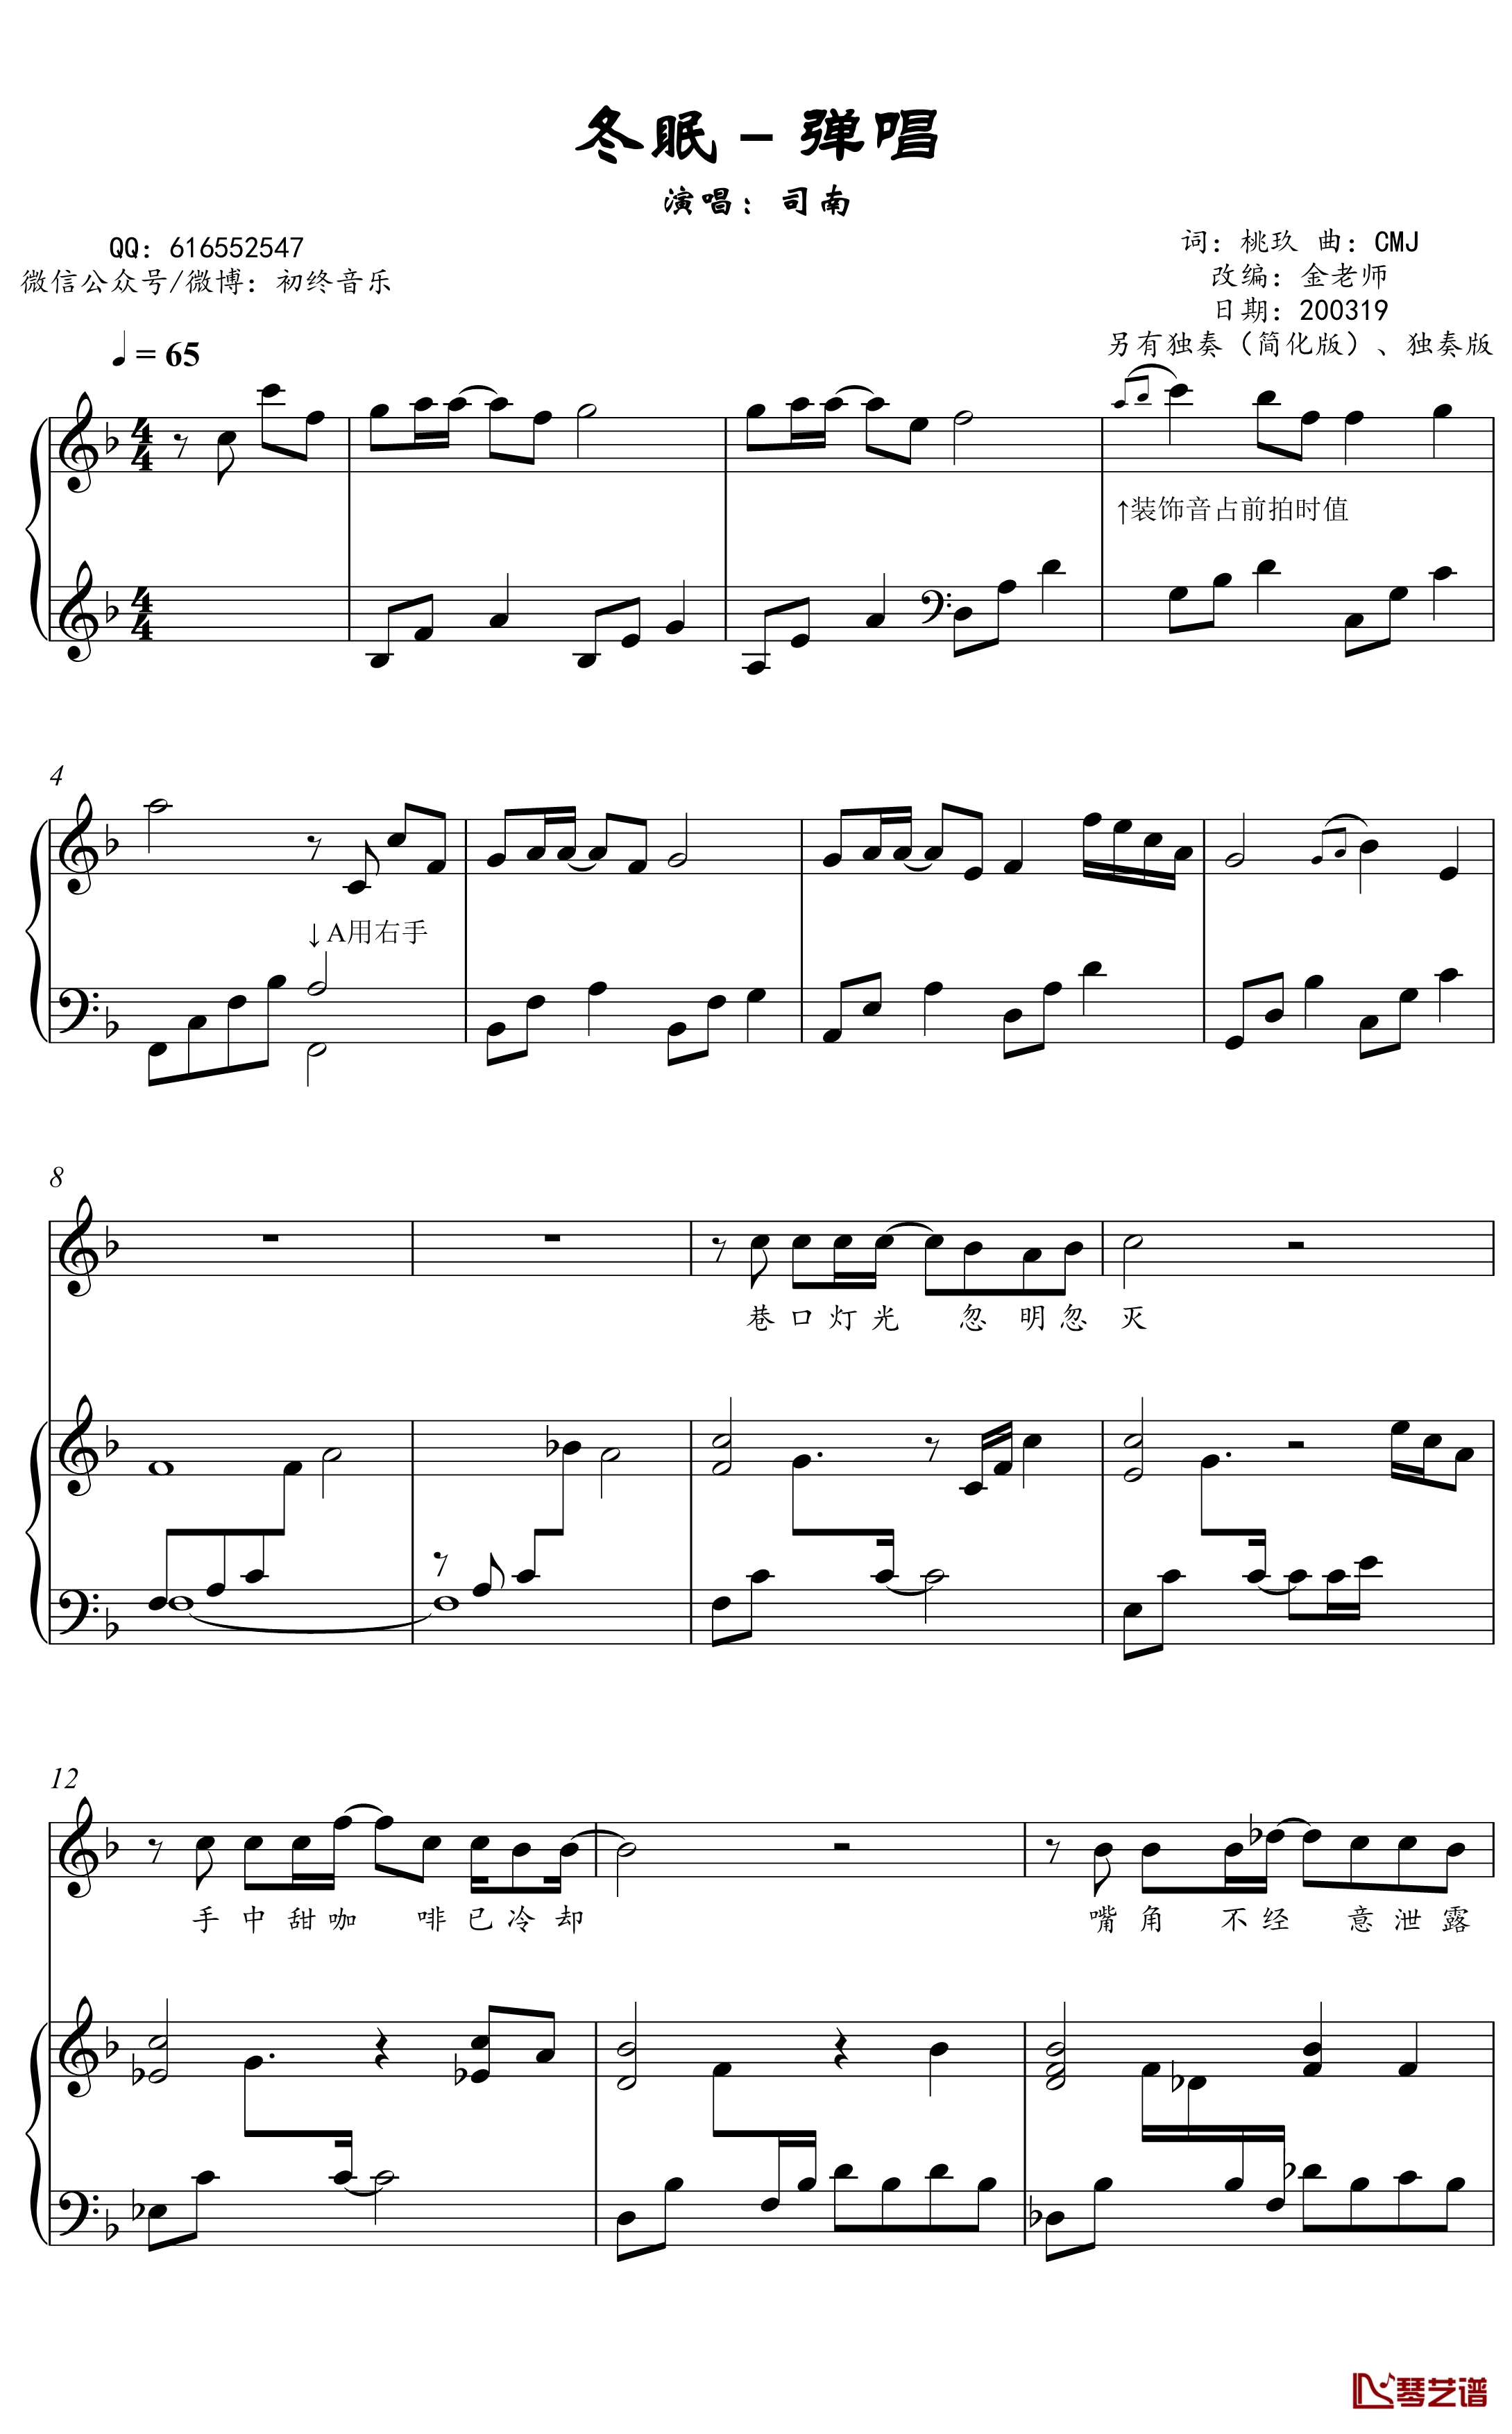 冬眠钢琴谱-金老师弹唱谱2003192